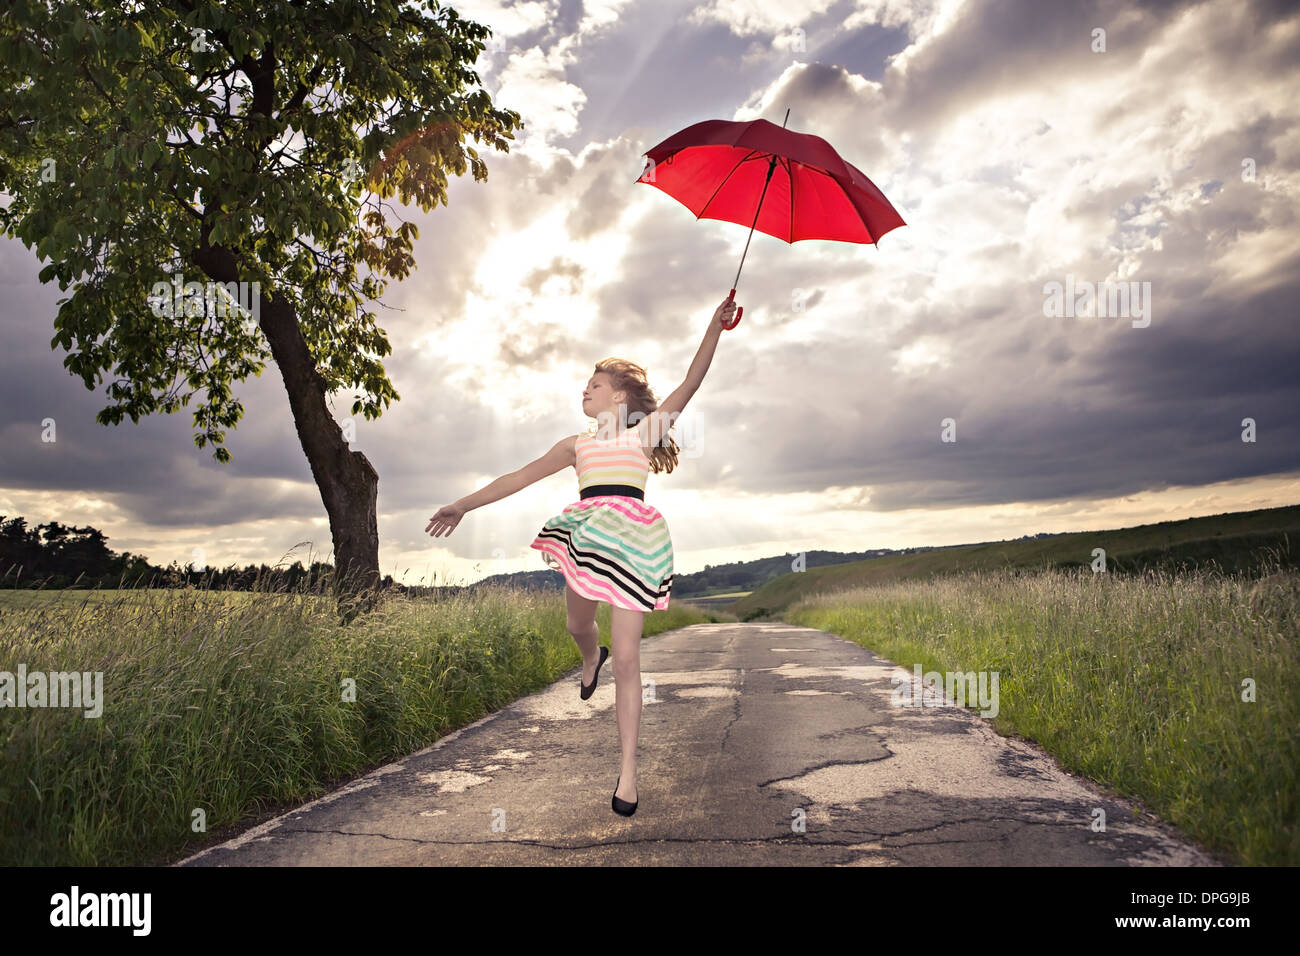 Ragazza adolescente jumping con un ombrello nella parte anteriore del paesaggio rurale Foto Stock